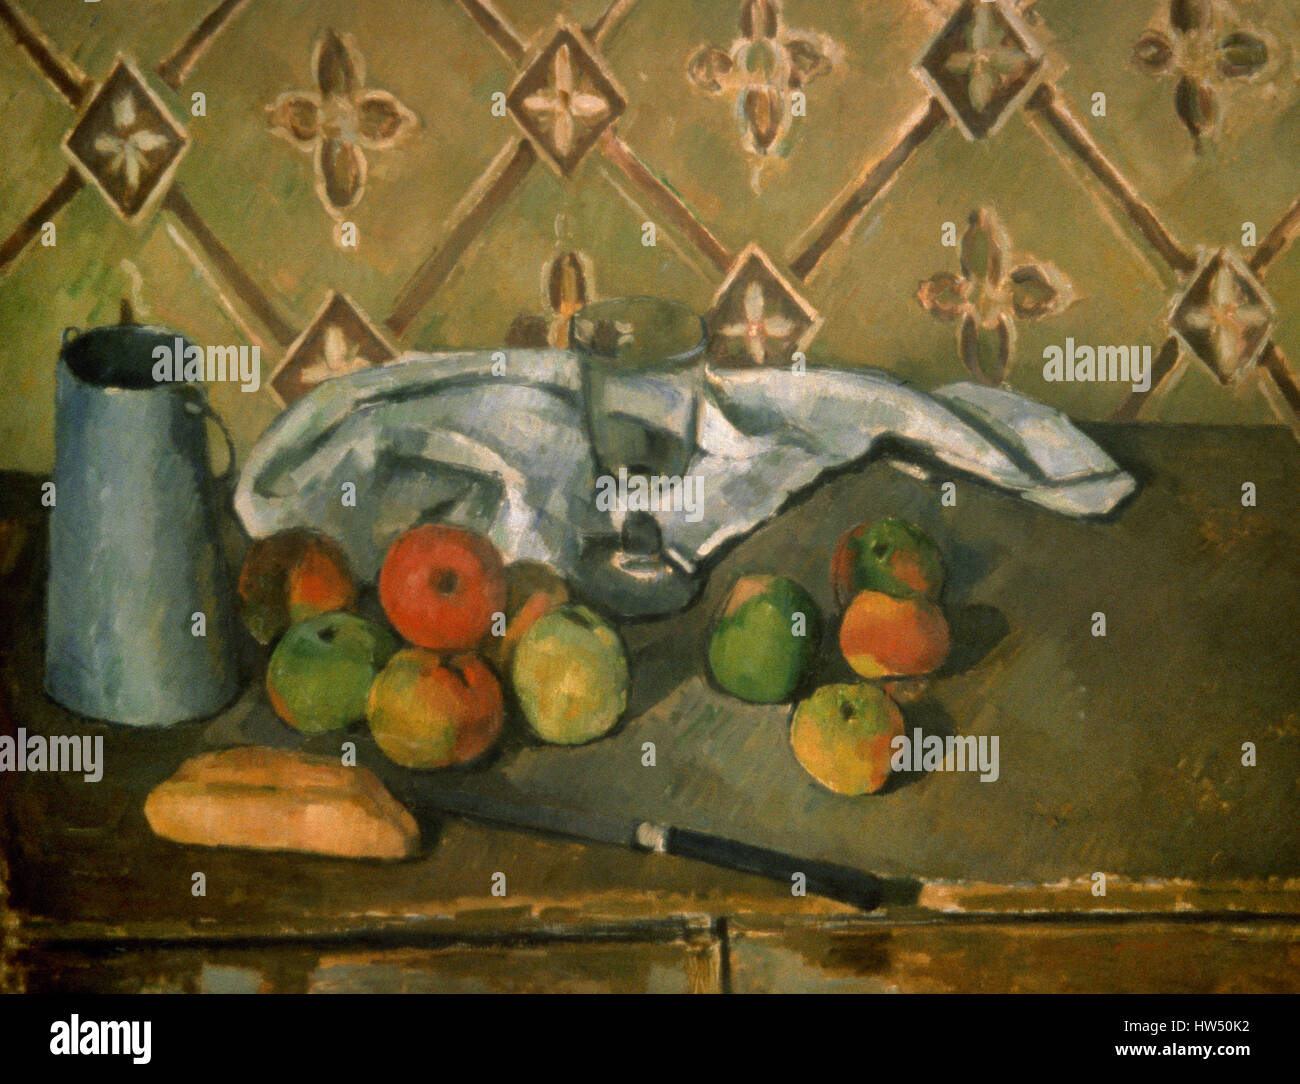 Paul Cézanne (1839-1906). Le peintre français. Postimpressionnistes. Nature morte avec fruits, serviette et pichet de lait. Huile sur toile, 1885-1886. Musée de l'Orangerie. Paris. La France. Banque D'Images